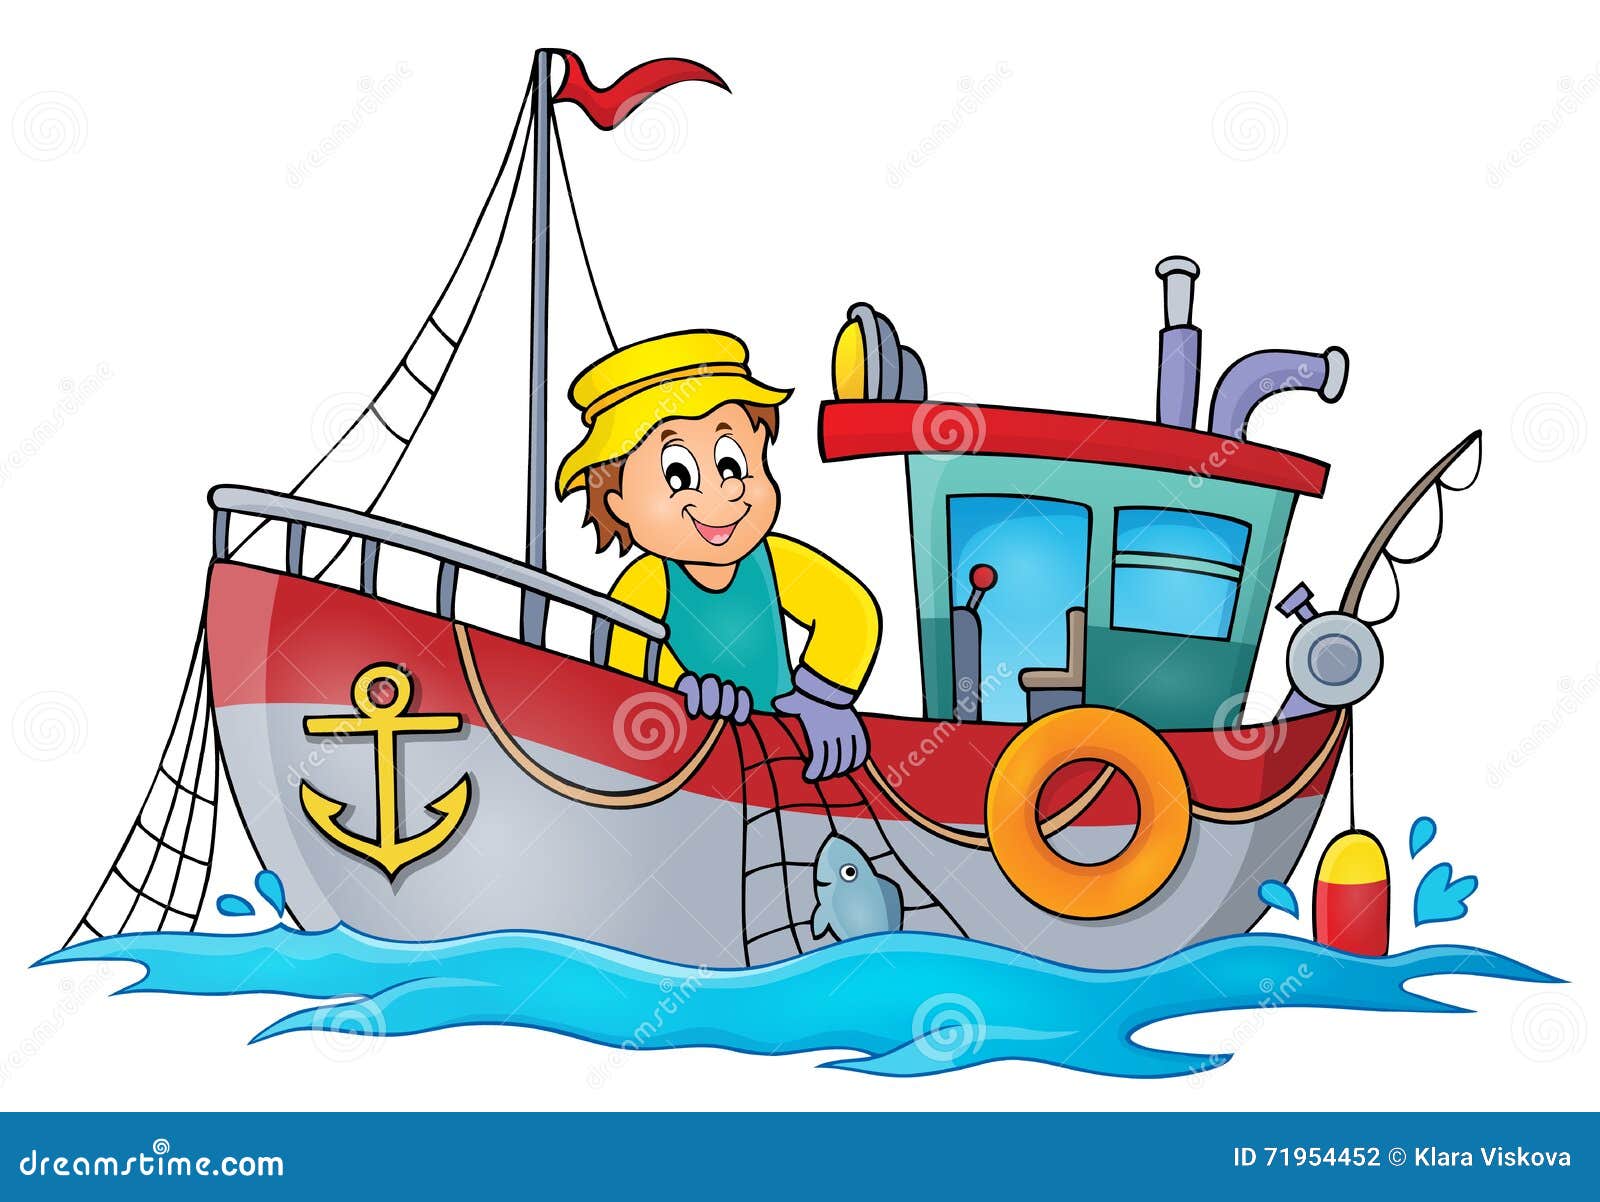 Fishing Boat Catching Fish Net Stock Illustrations – 414 Fishing